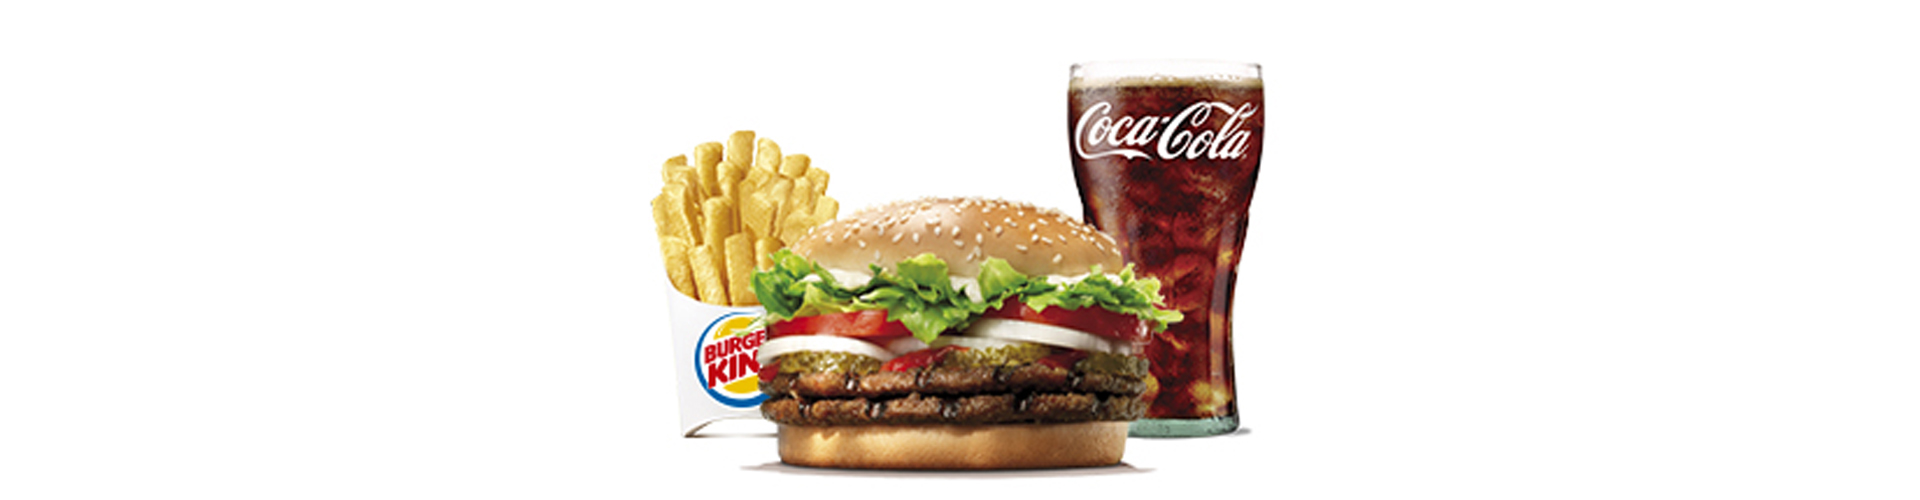 burgerking-40001708-agua-ensalada